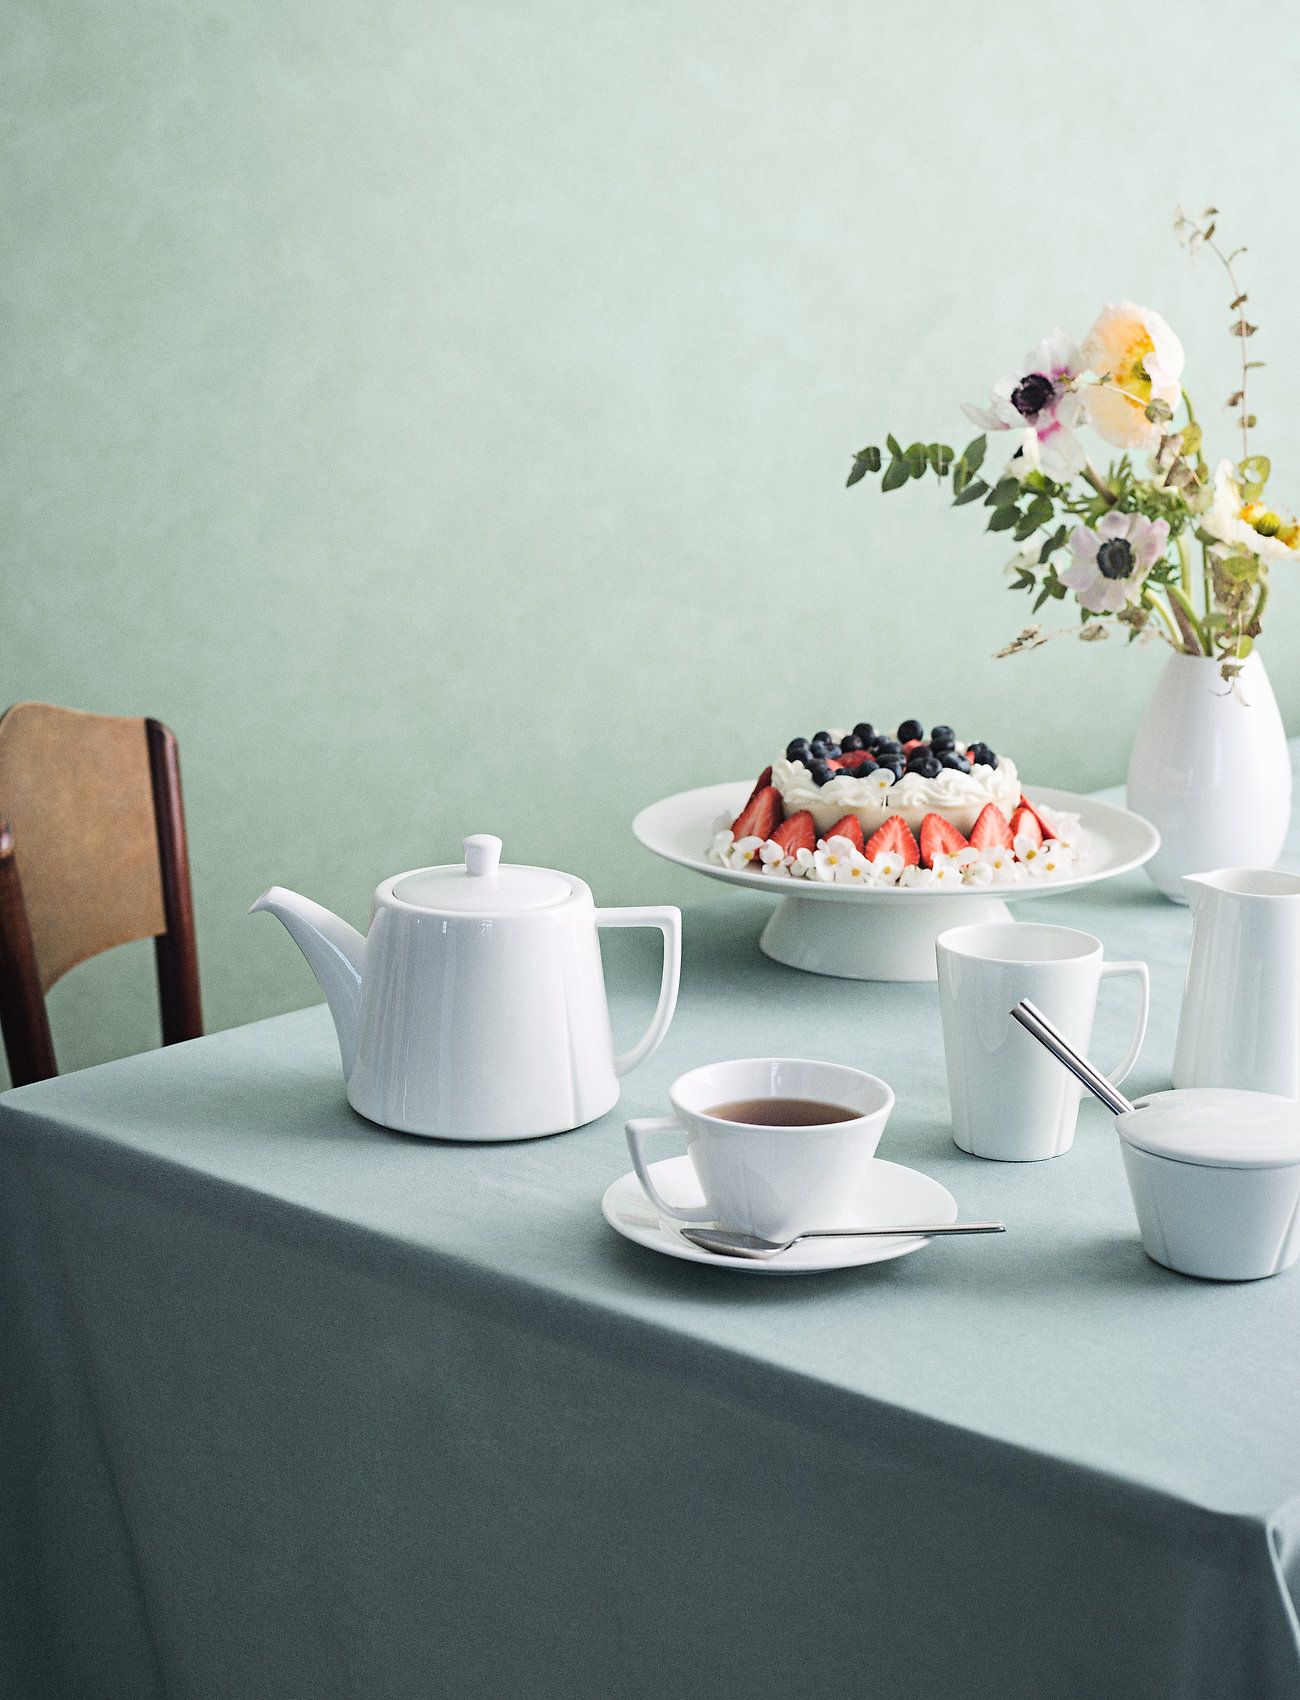 Rosendahl - Grand Cru Coffee cup with matching saucer 26 cl 4 pcs. - kaffetassen - white - 1